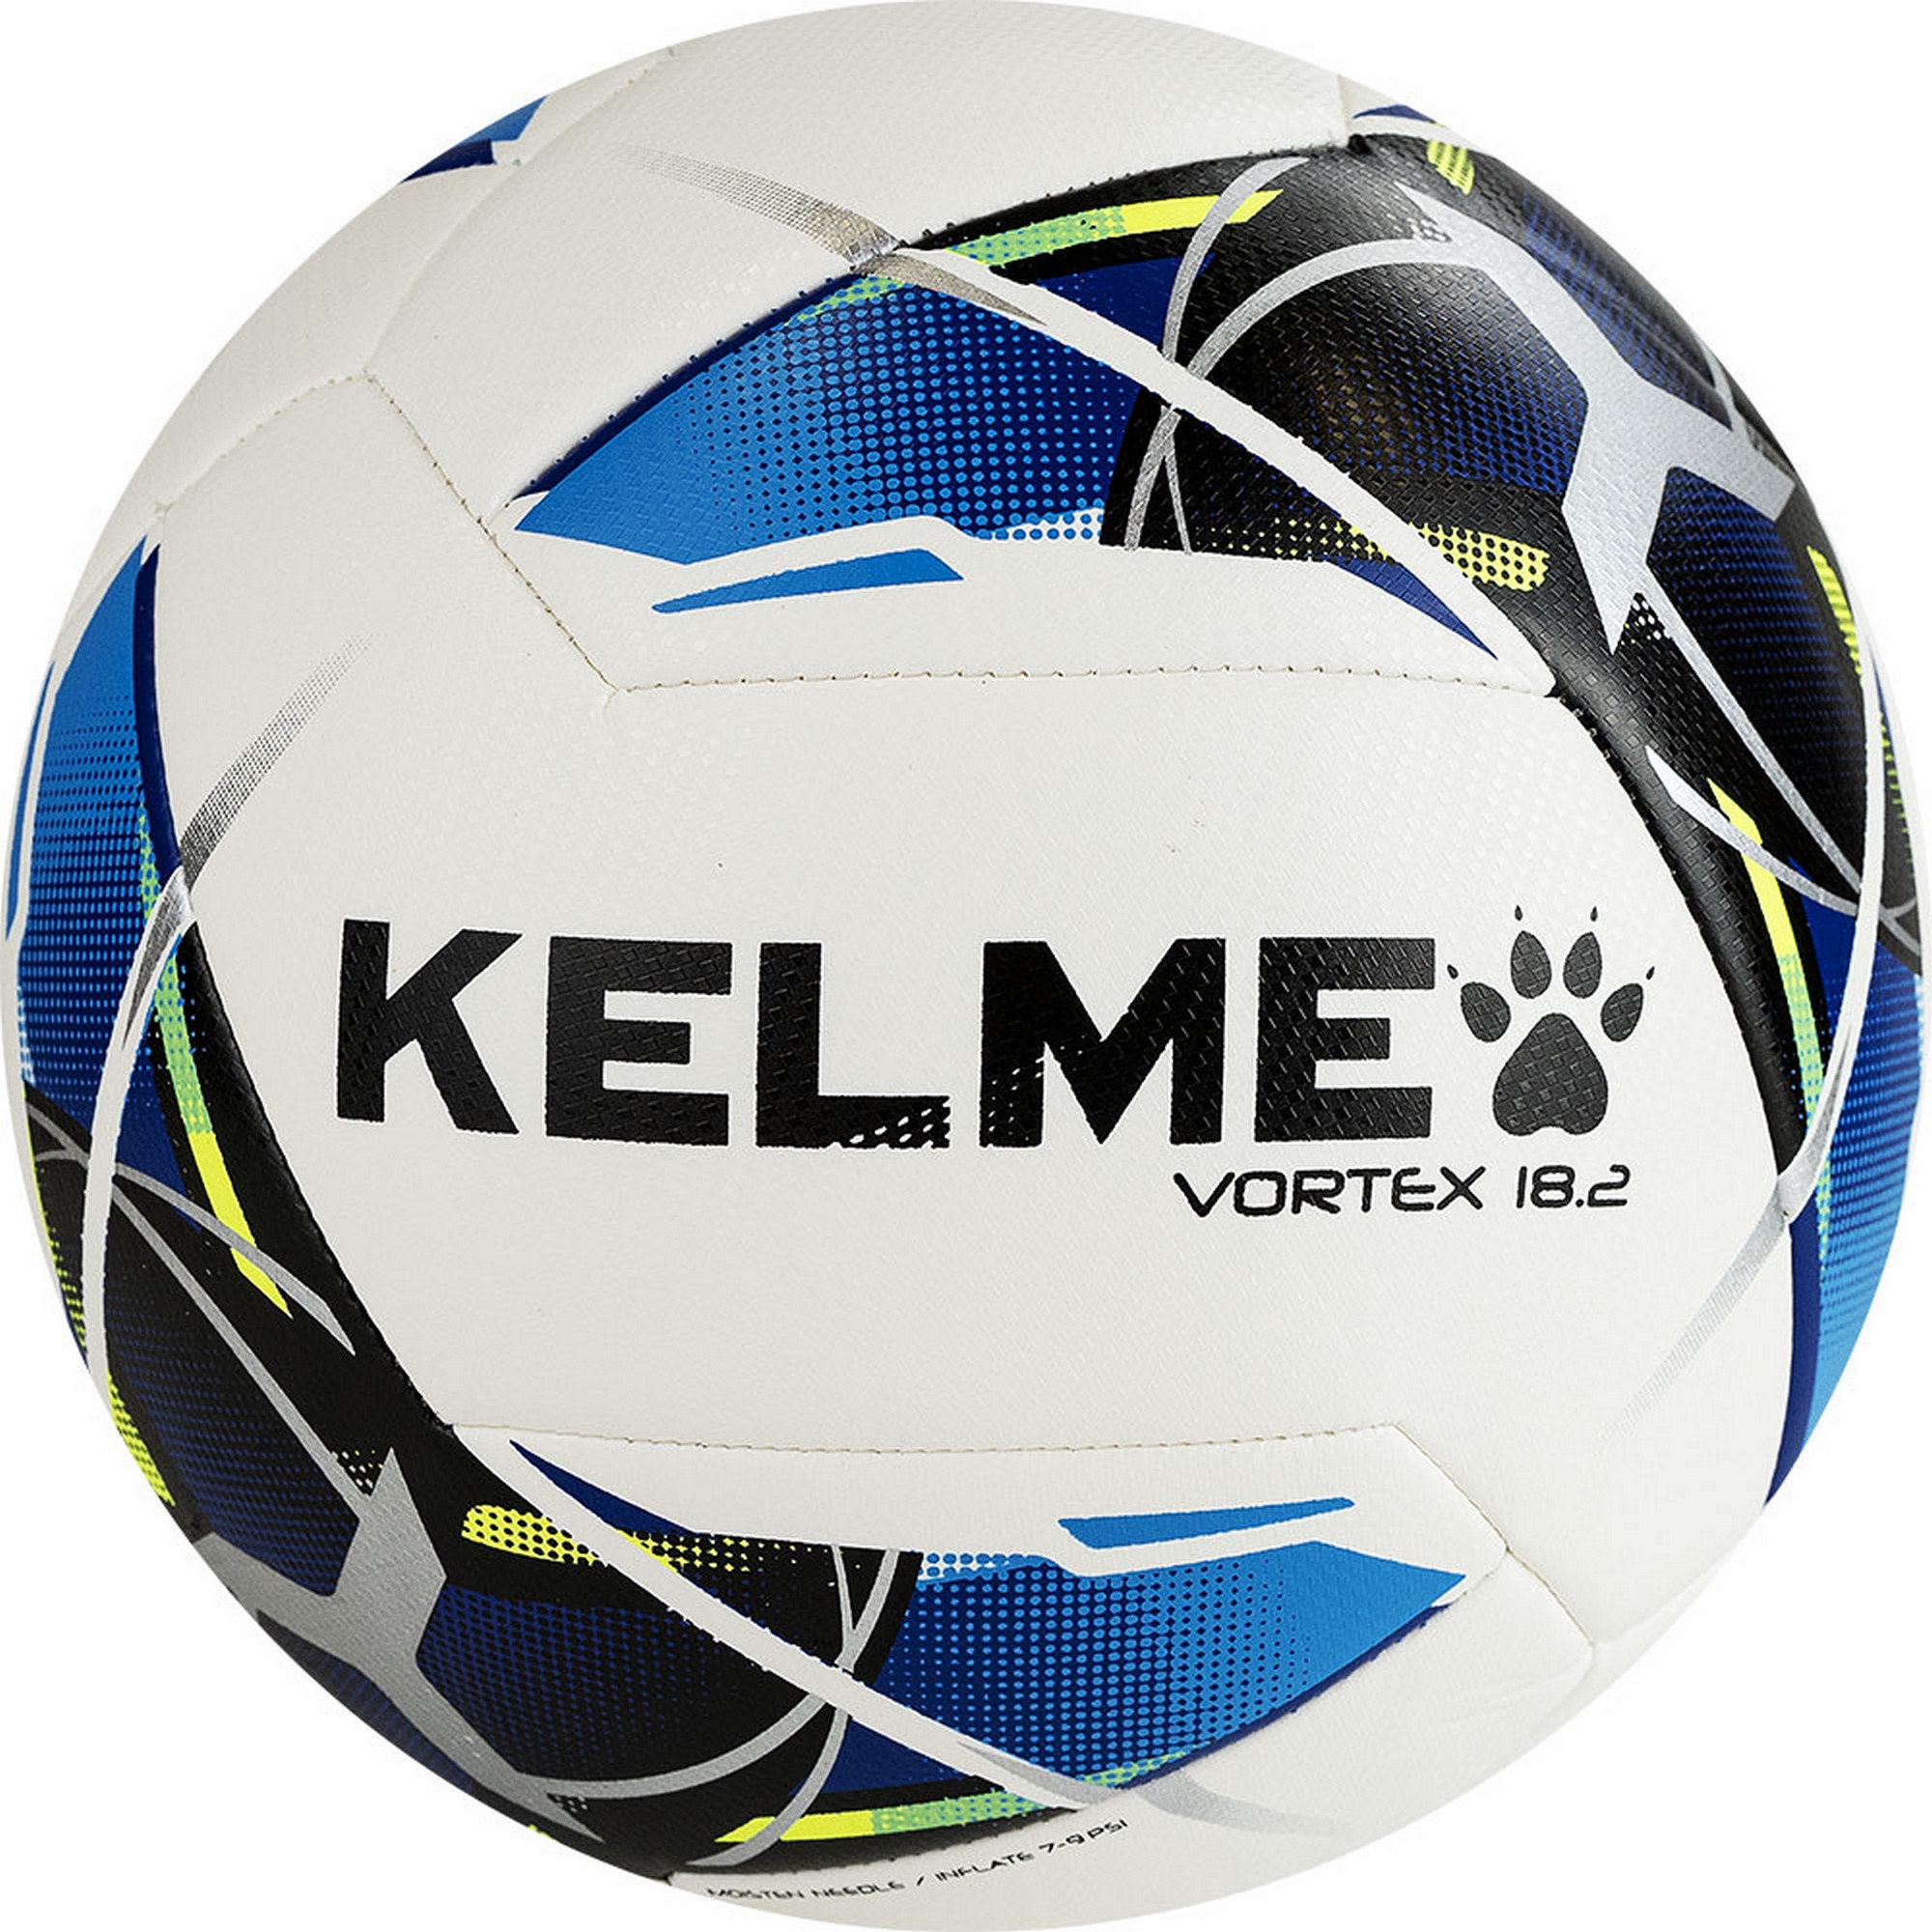 Мяч футбольный Kelme Vortex 18.2 9886120-113 р.4 2000_2000